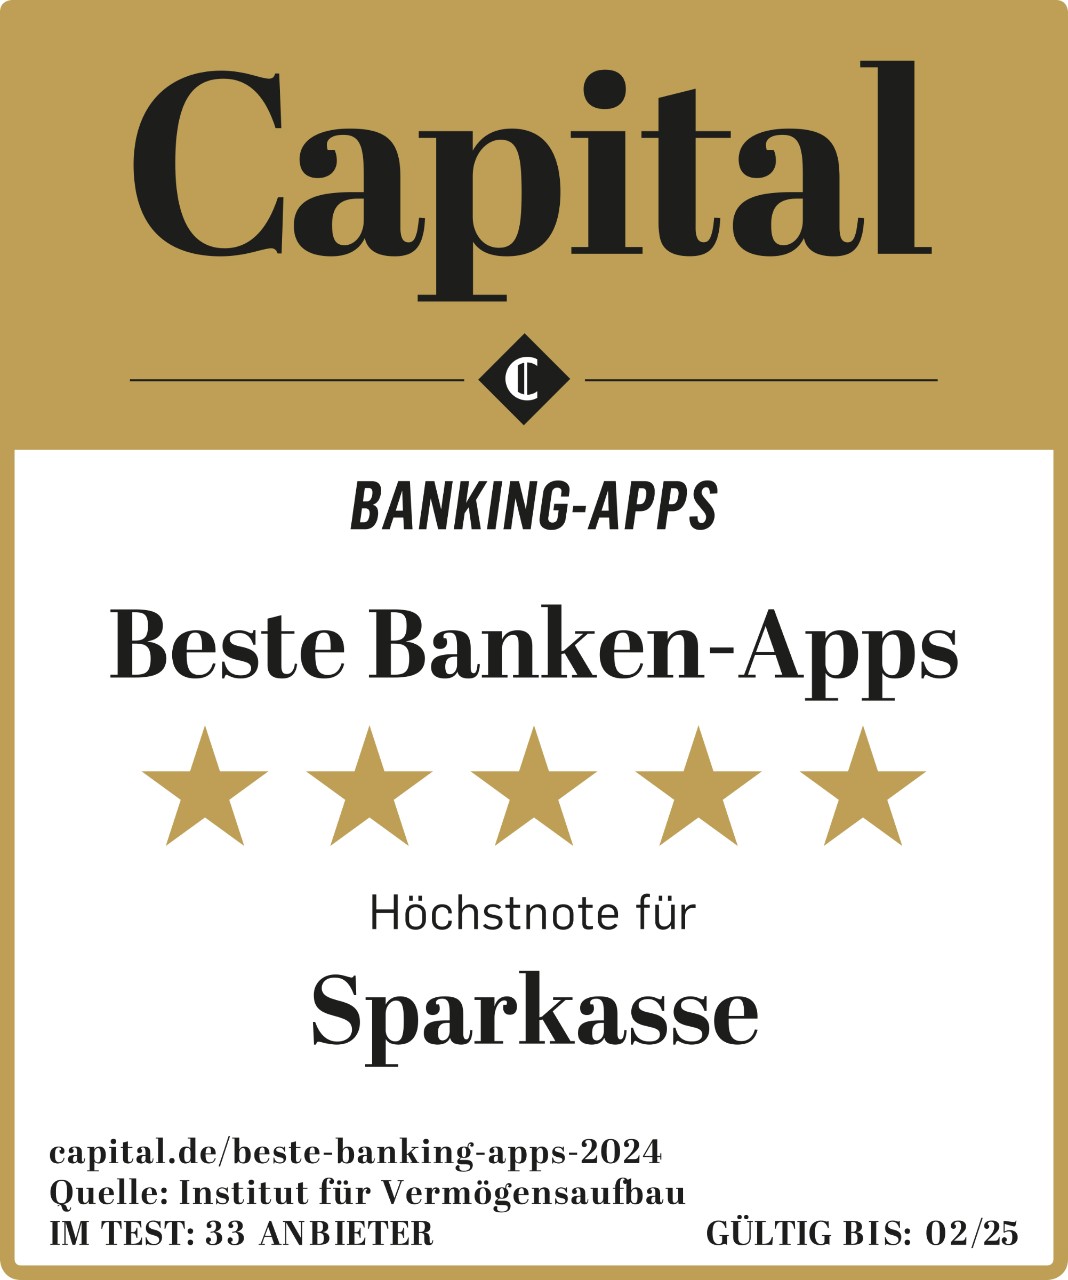 Beste Banken-Apps